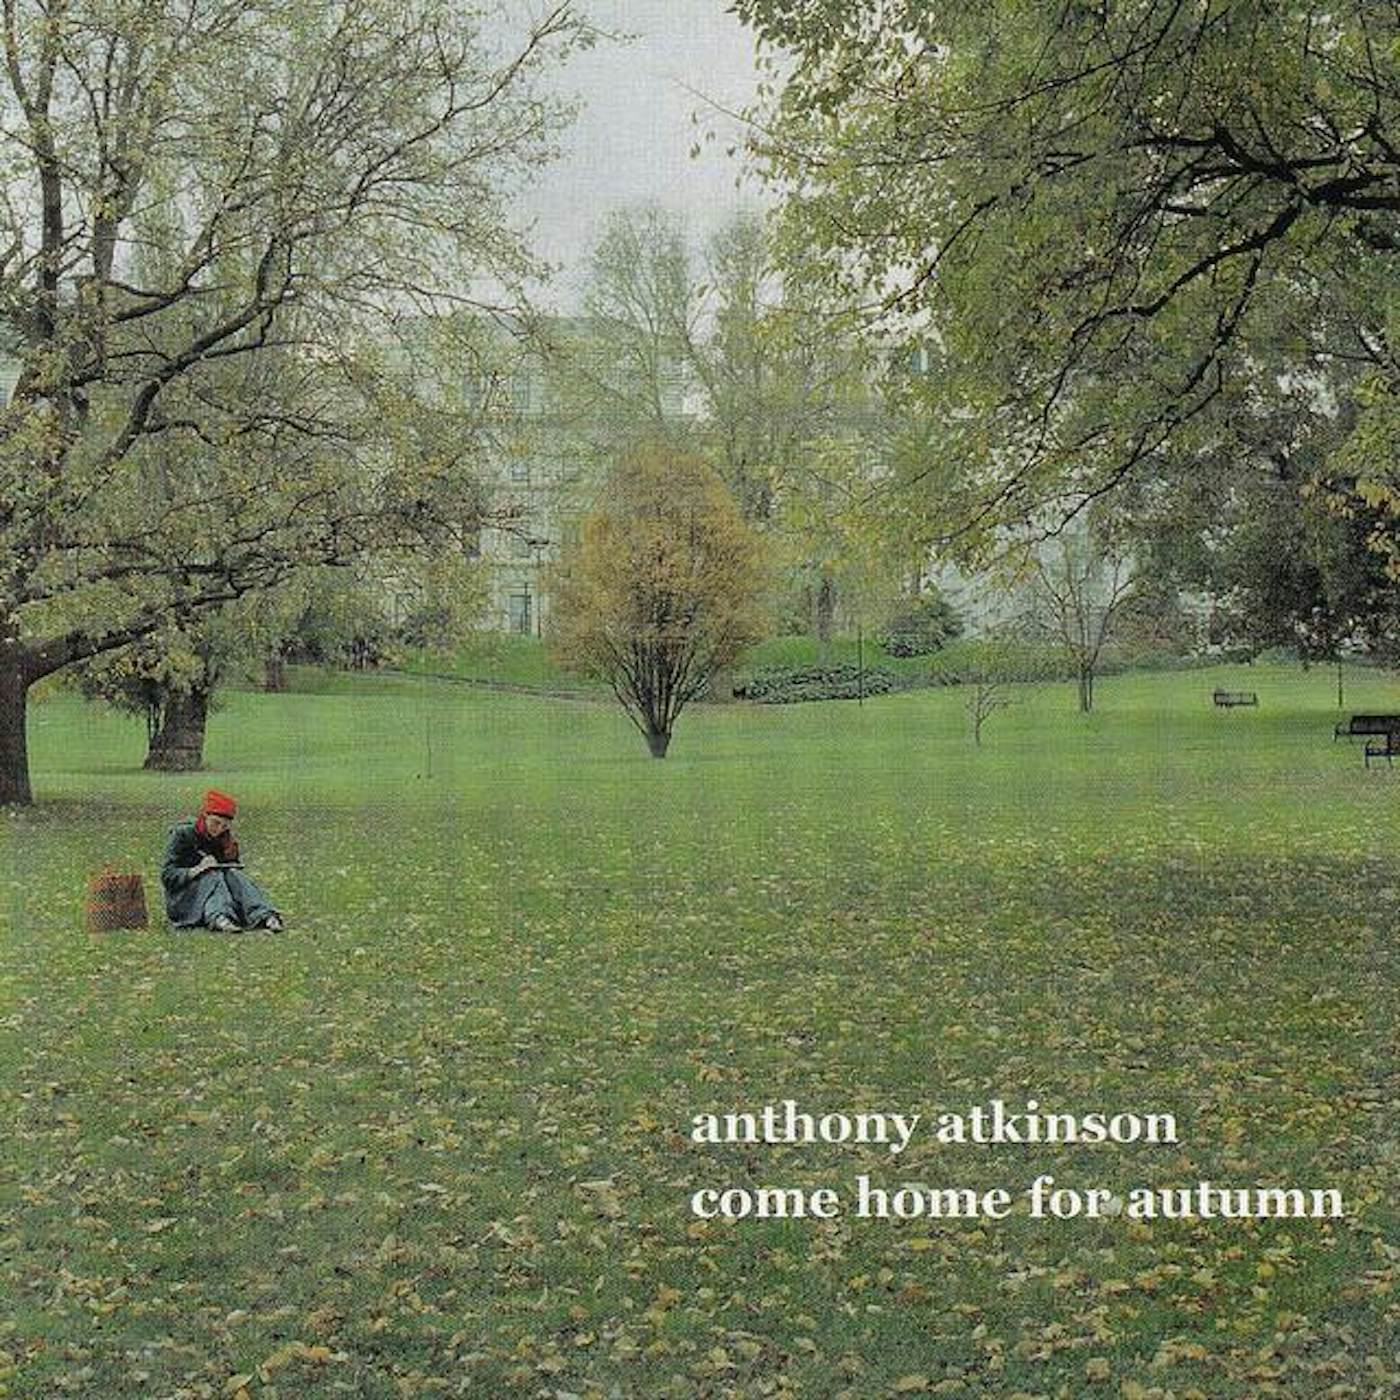 Anthony Atkinson